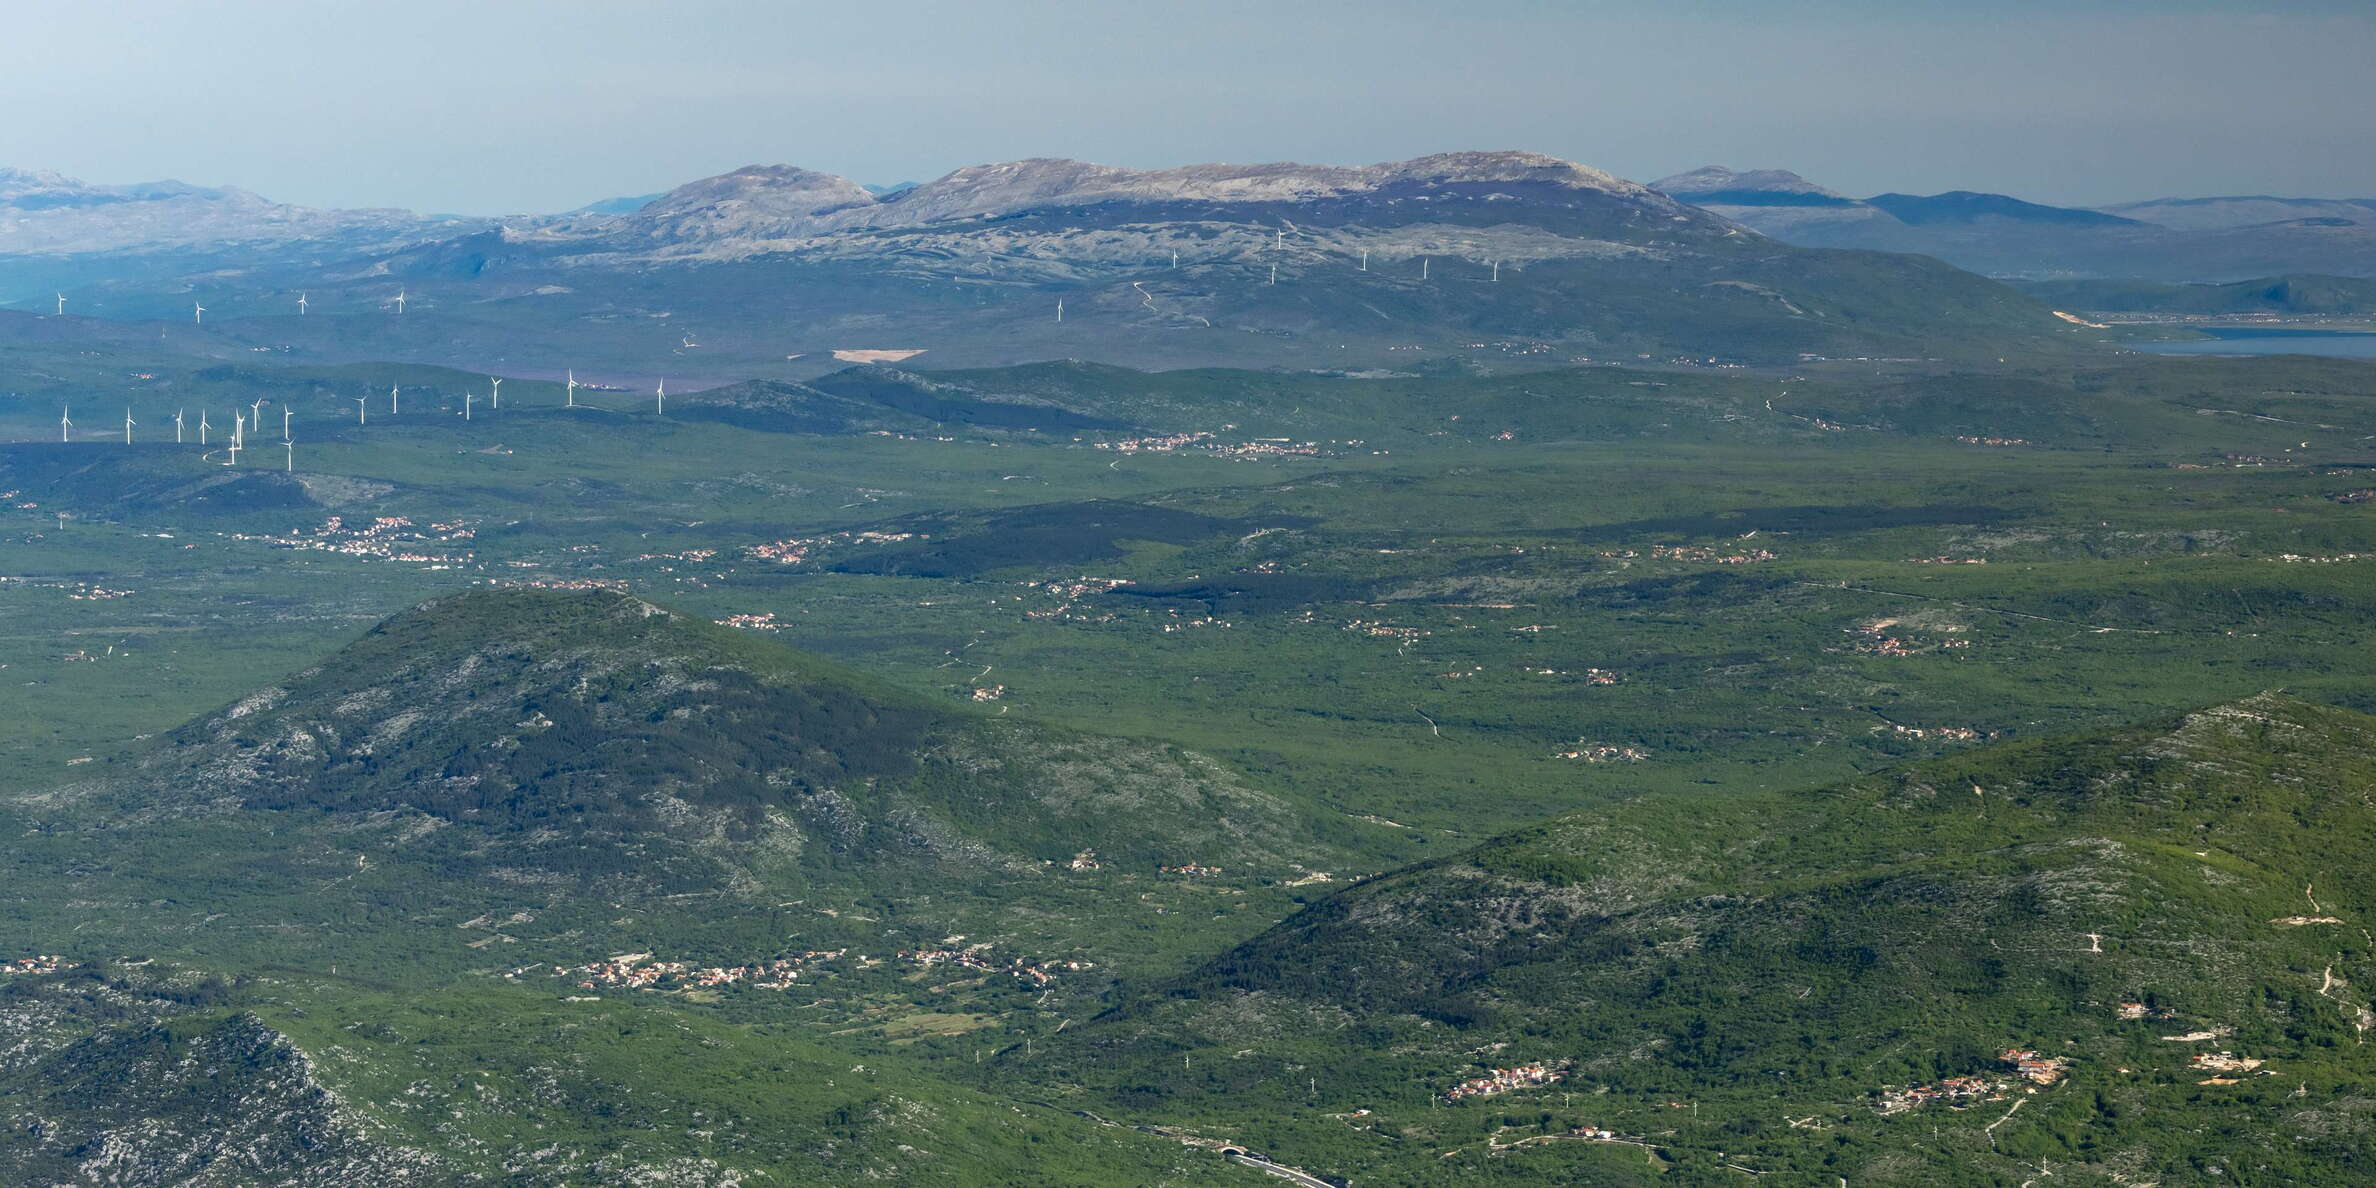 Dinaric karst landscape with Kamešnica